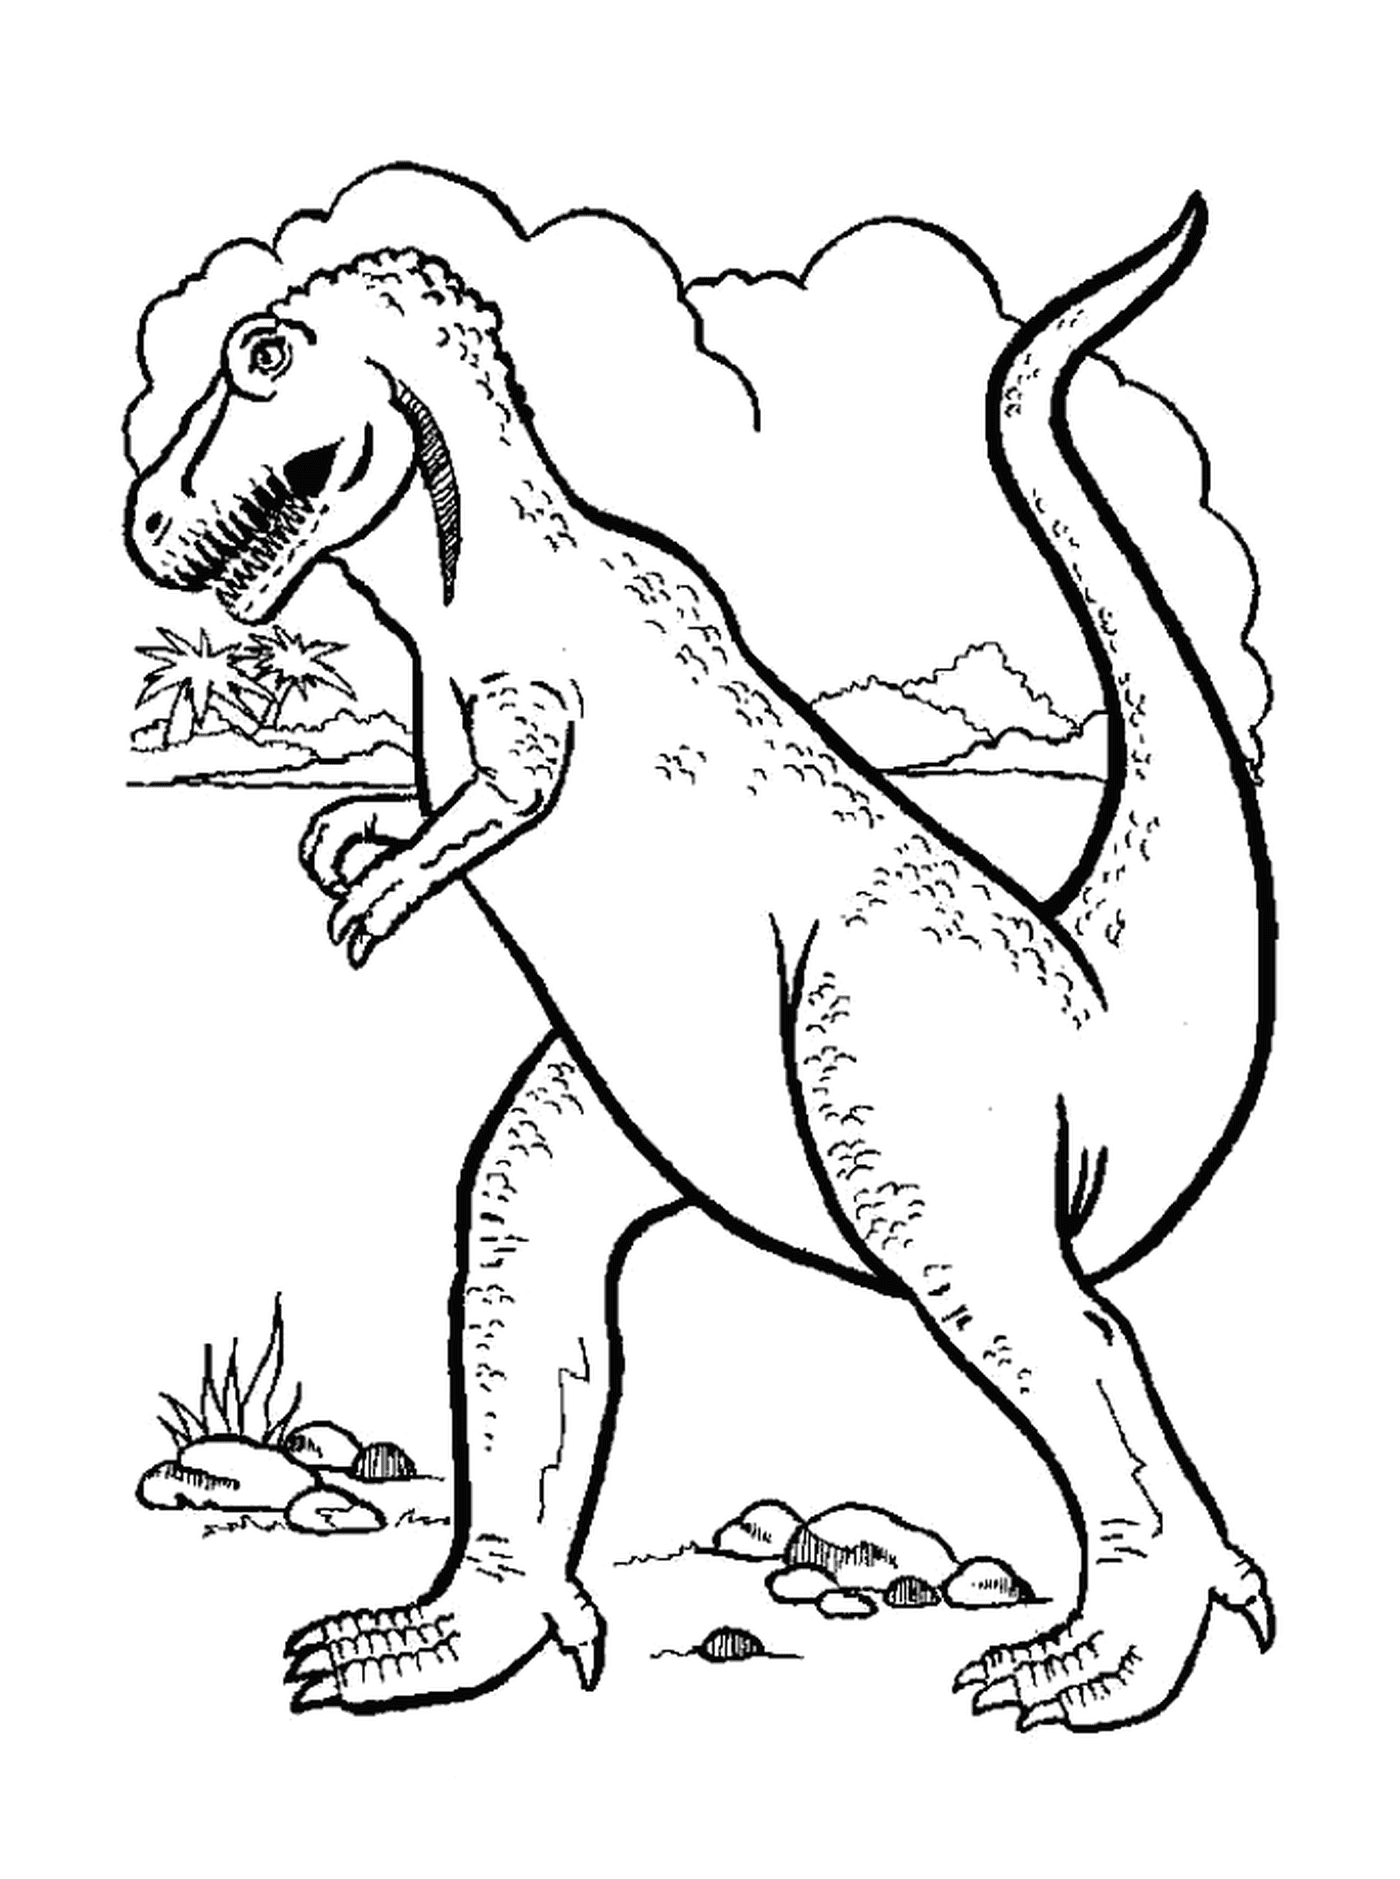  Захватывающий и интригующий динозавр 